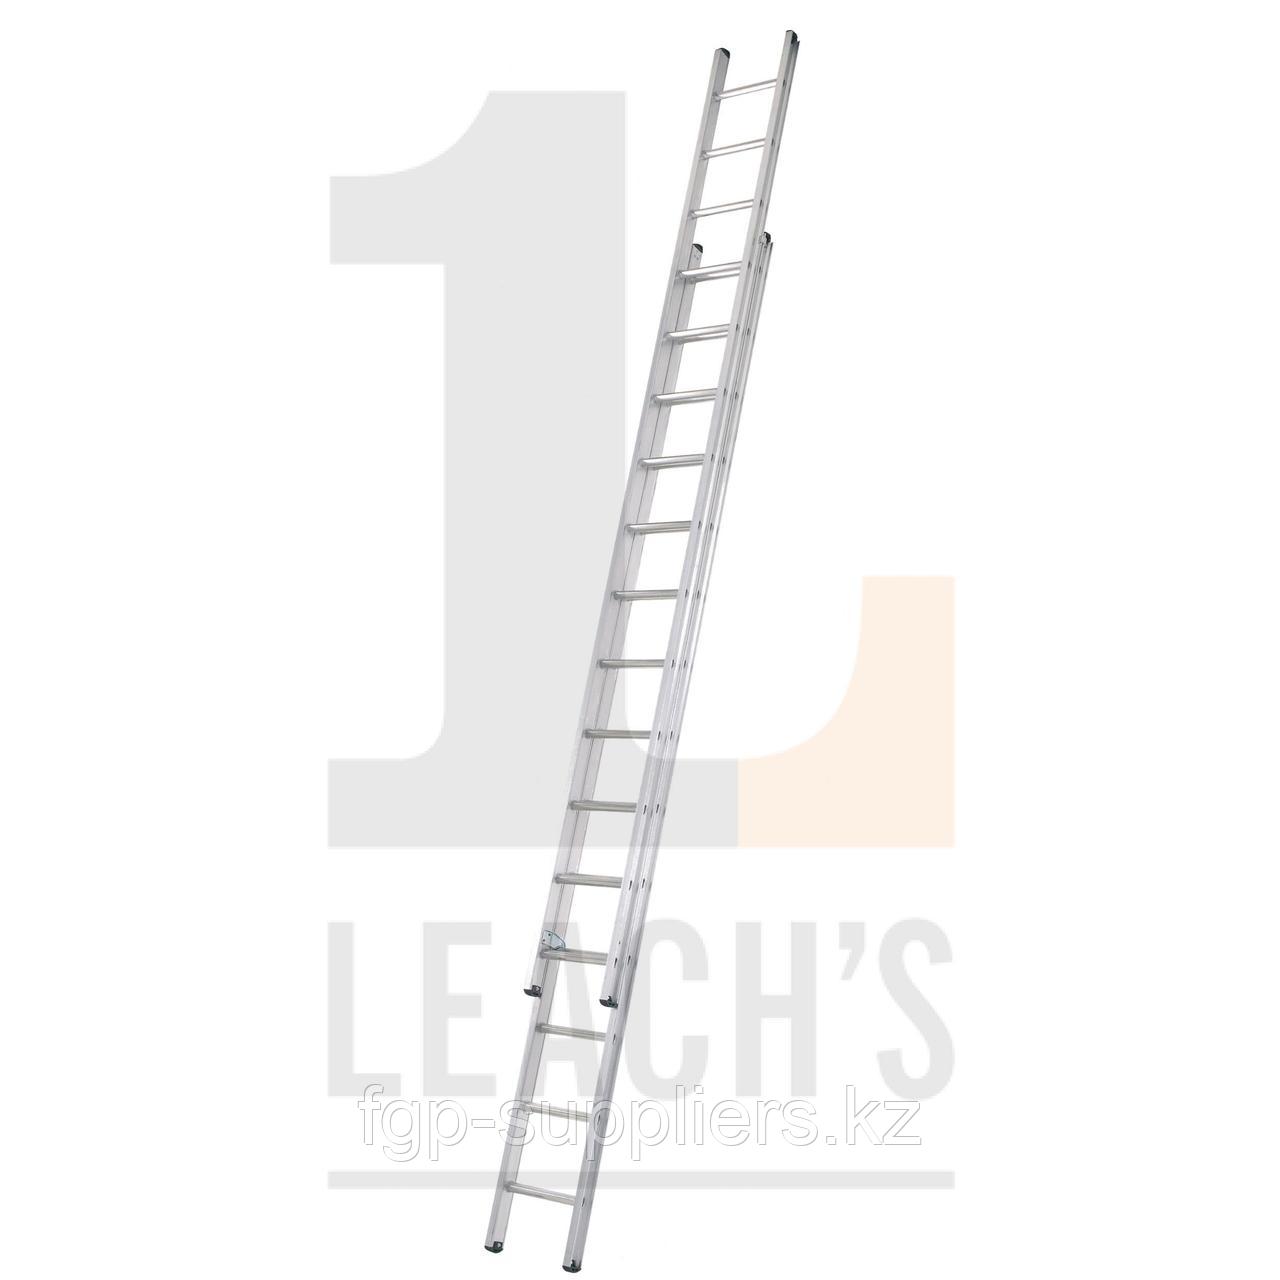 Scaffold Ladders / Лестницы Подмостей